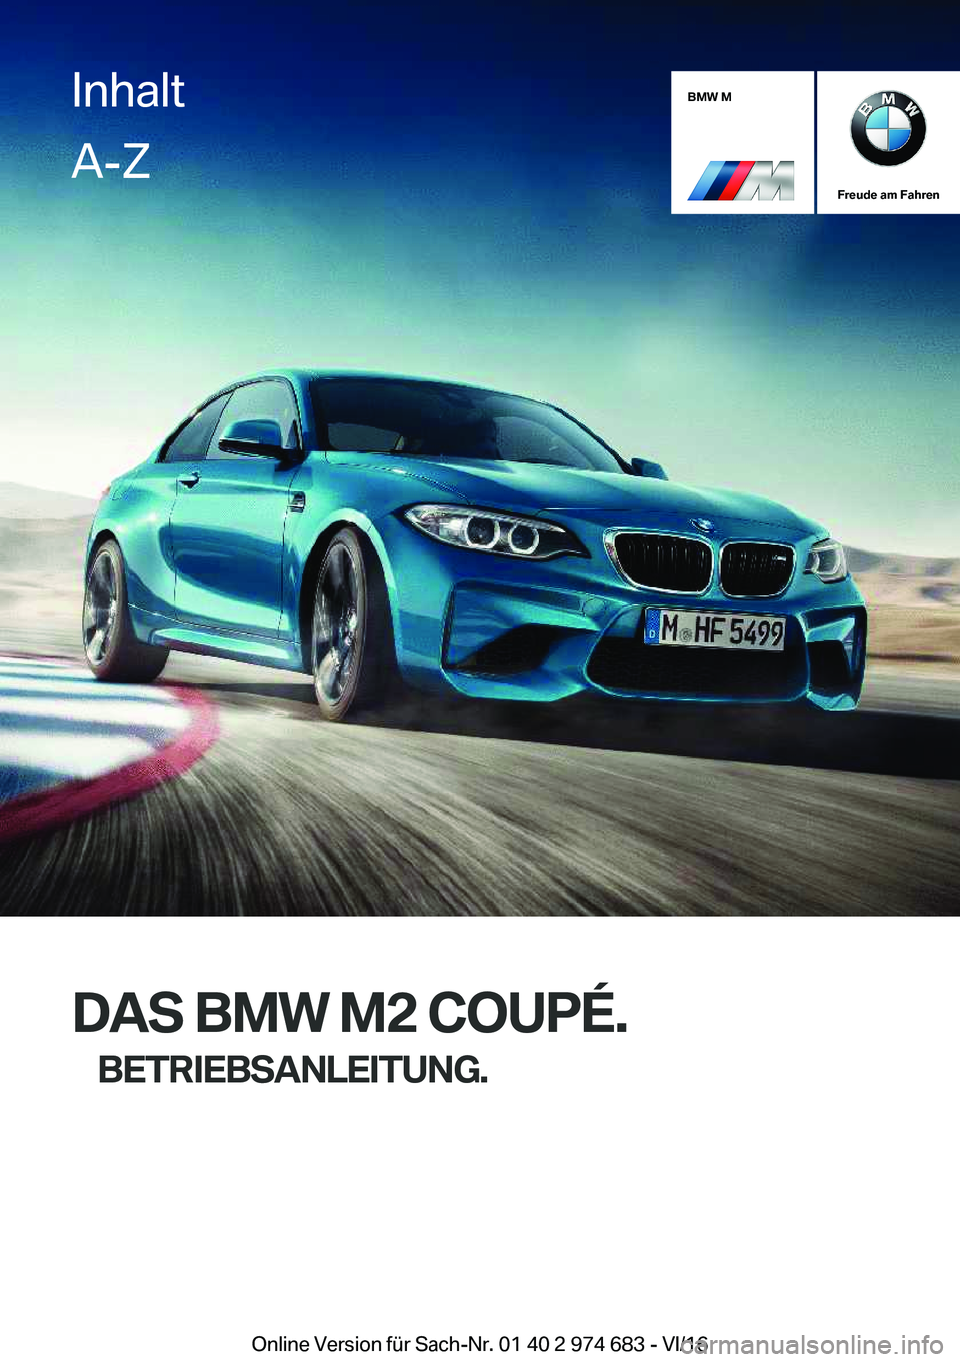 BMW M2 2017  Betriebsanleitungen (in German) �B�M�W��M
�F�r�e�u�d�e��a�m��F�a�h�r�e�n
�D�A�S��B�M�W��M�2��C�O�U�P�